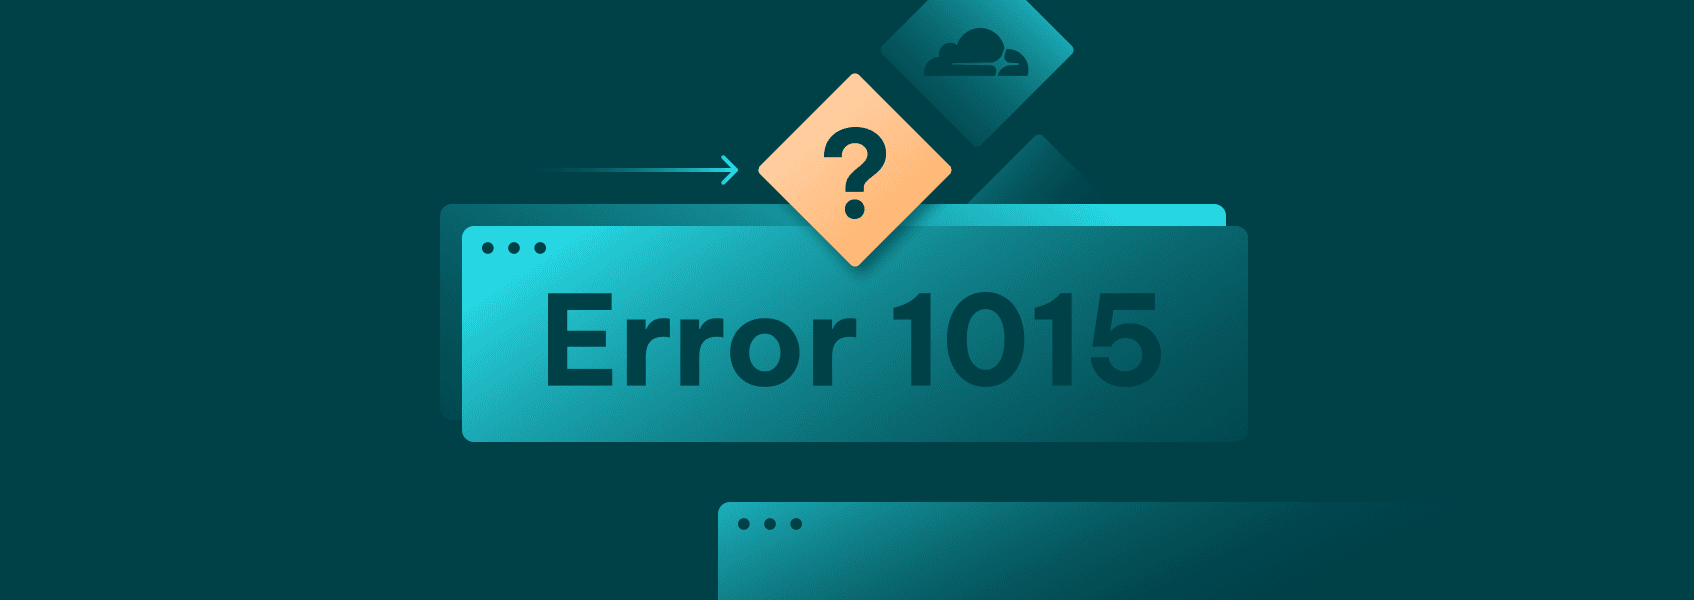 cloudflare error 1015 featured